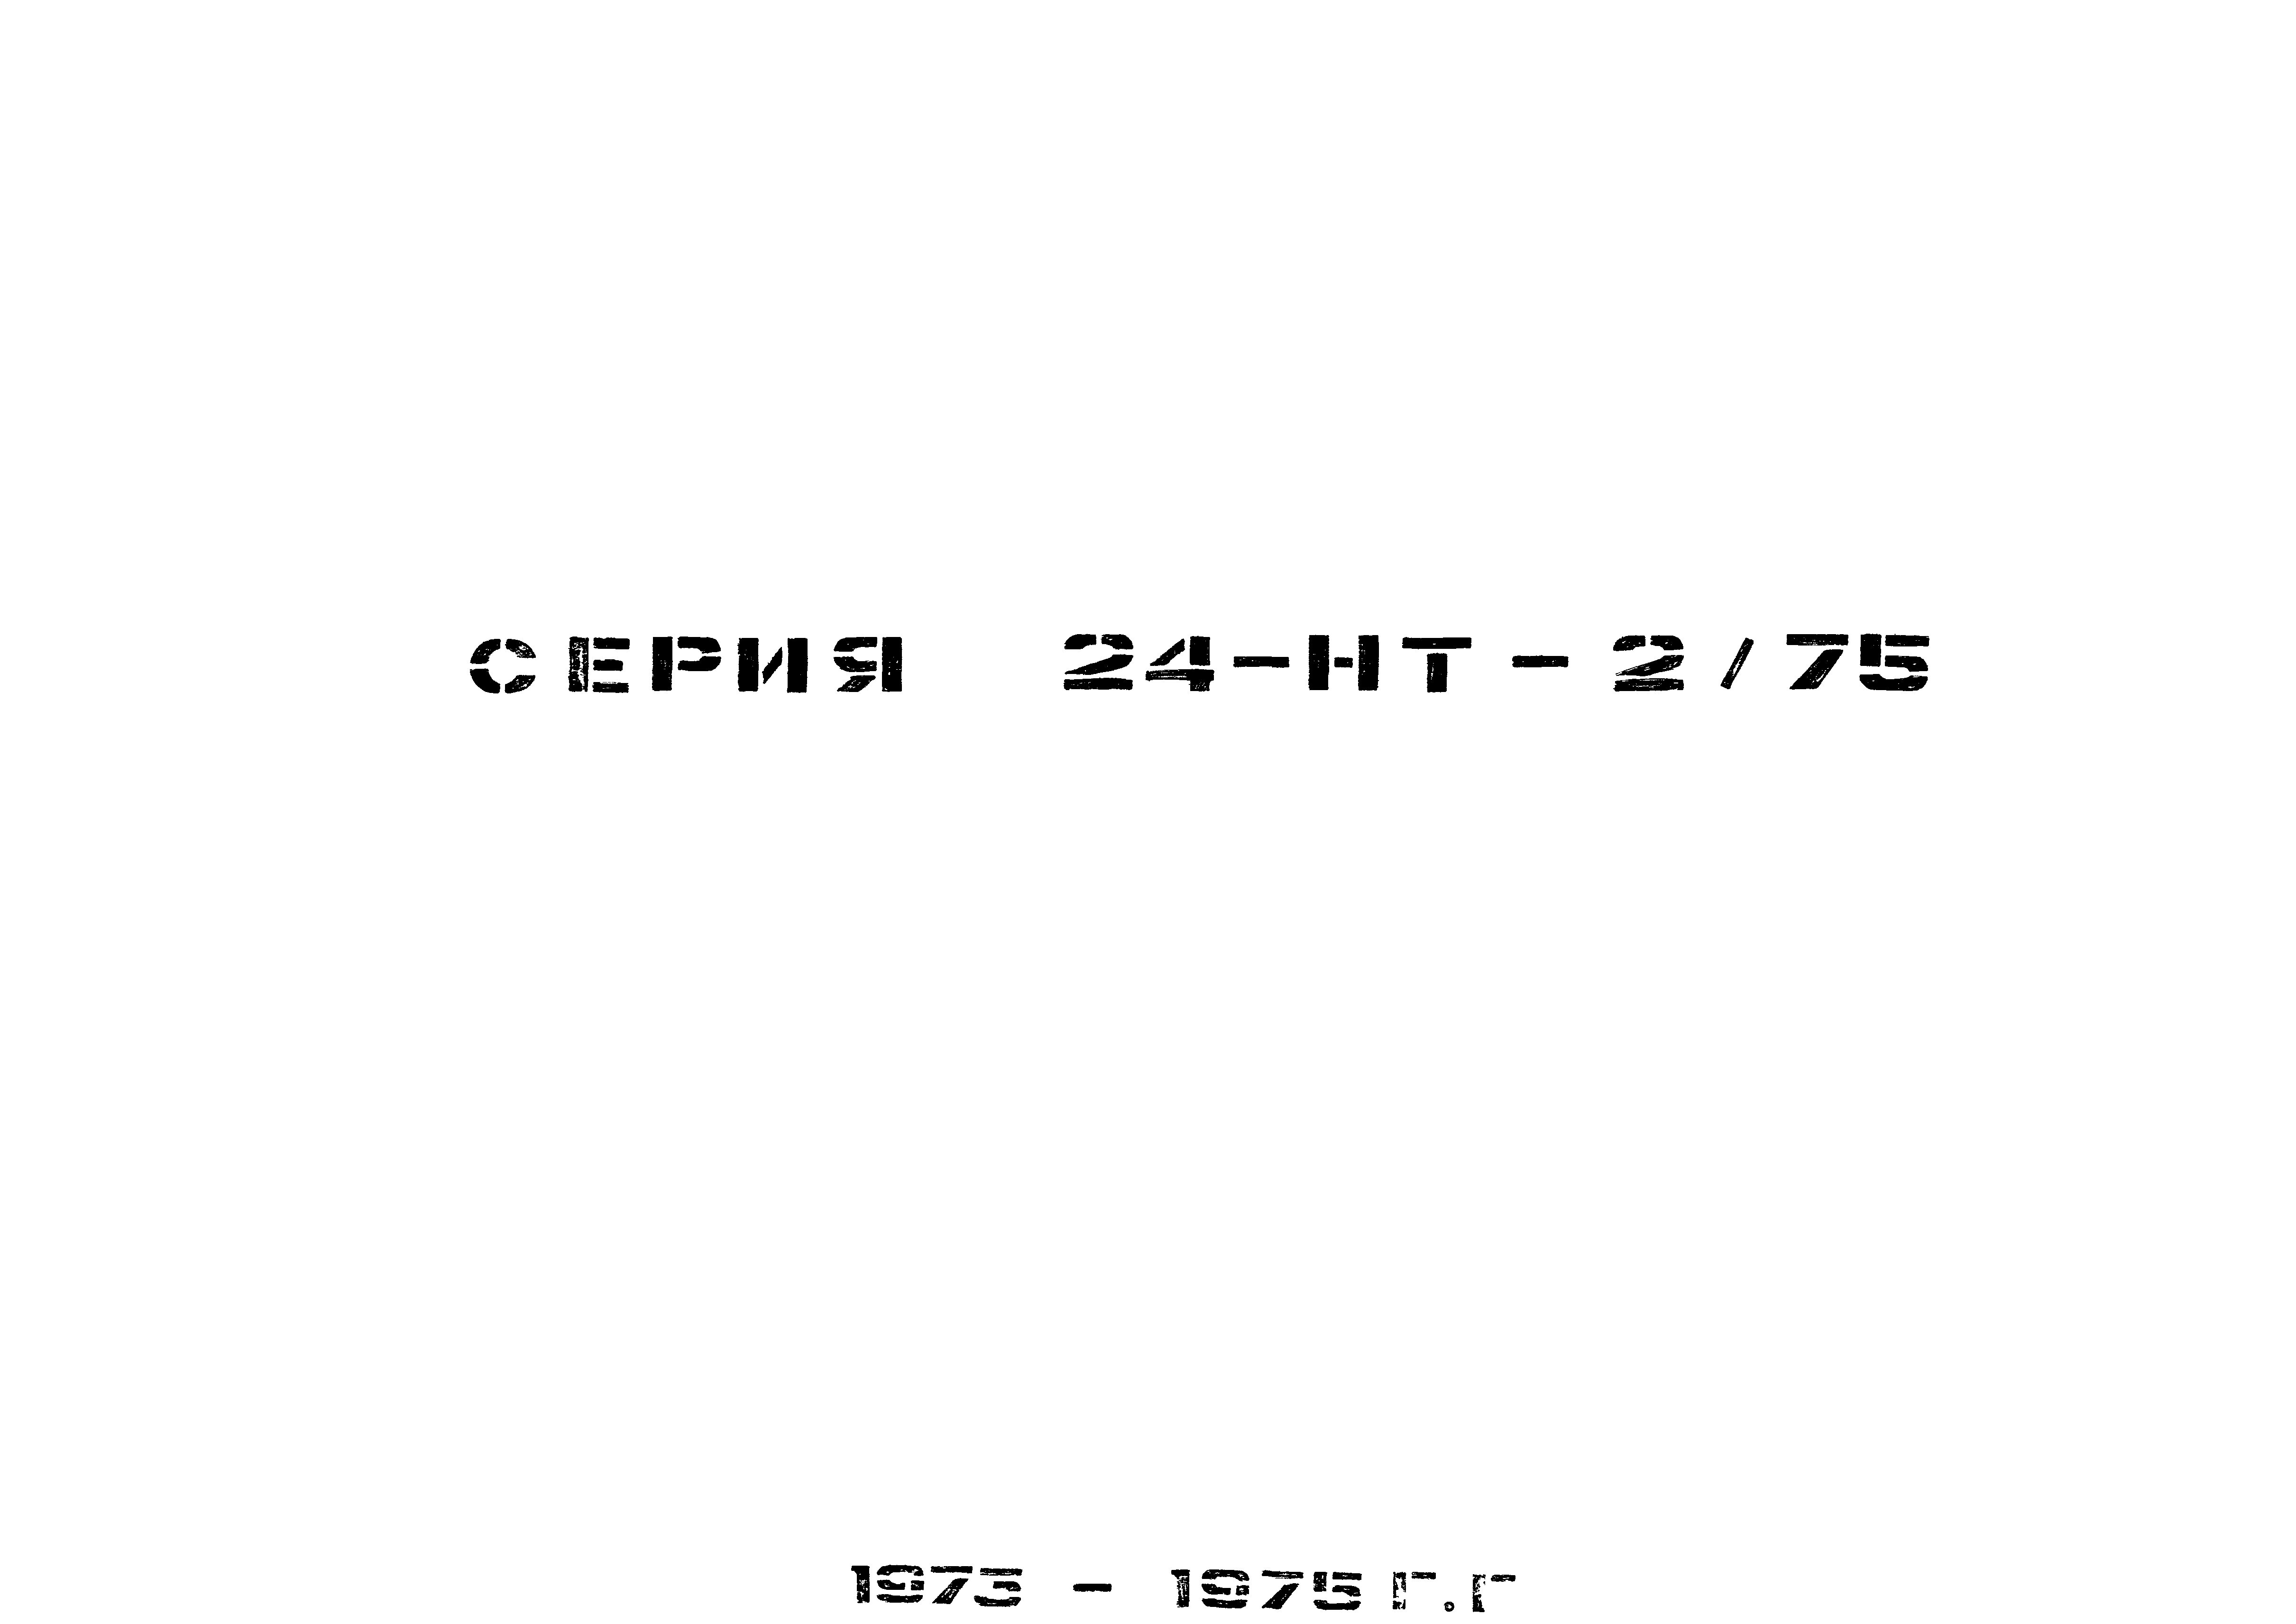 Серия 24-НТ-2/75